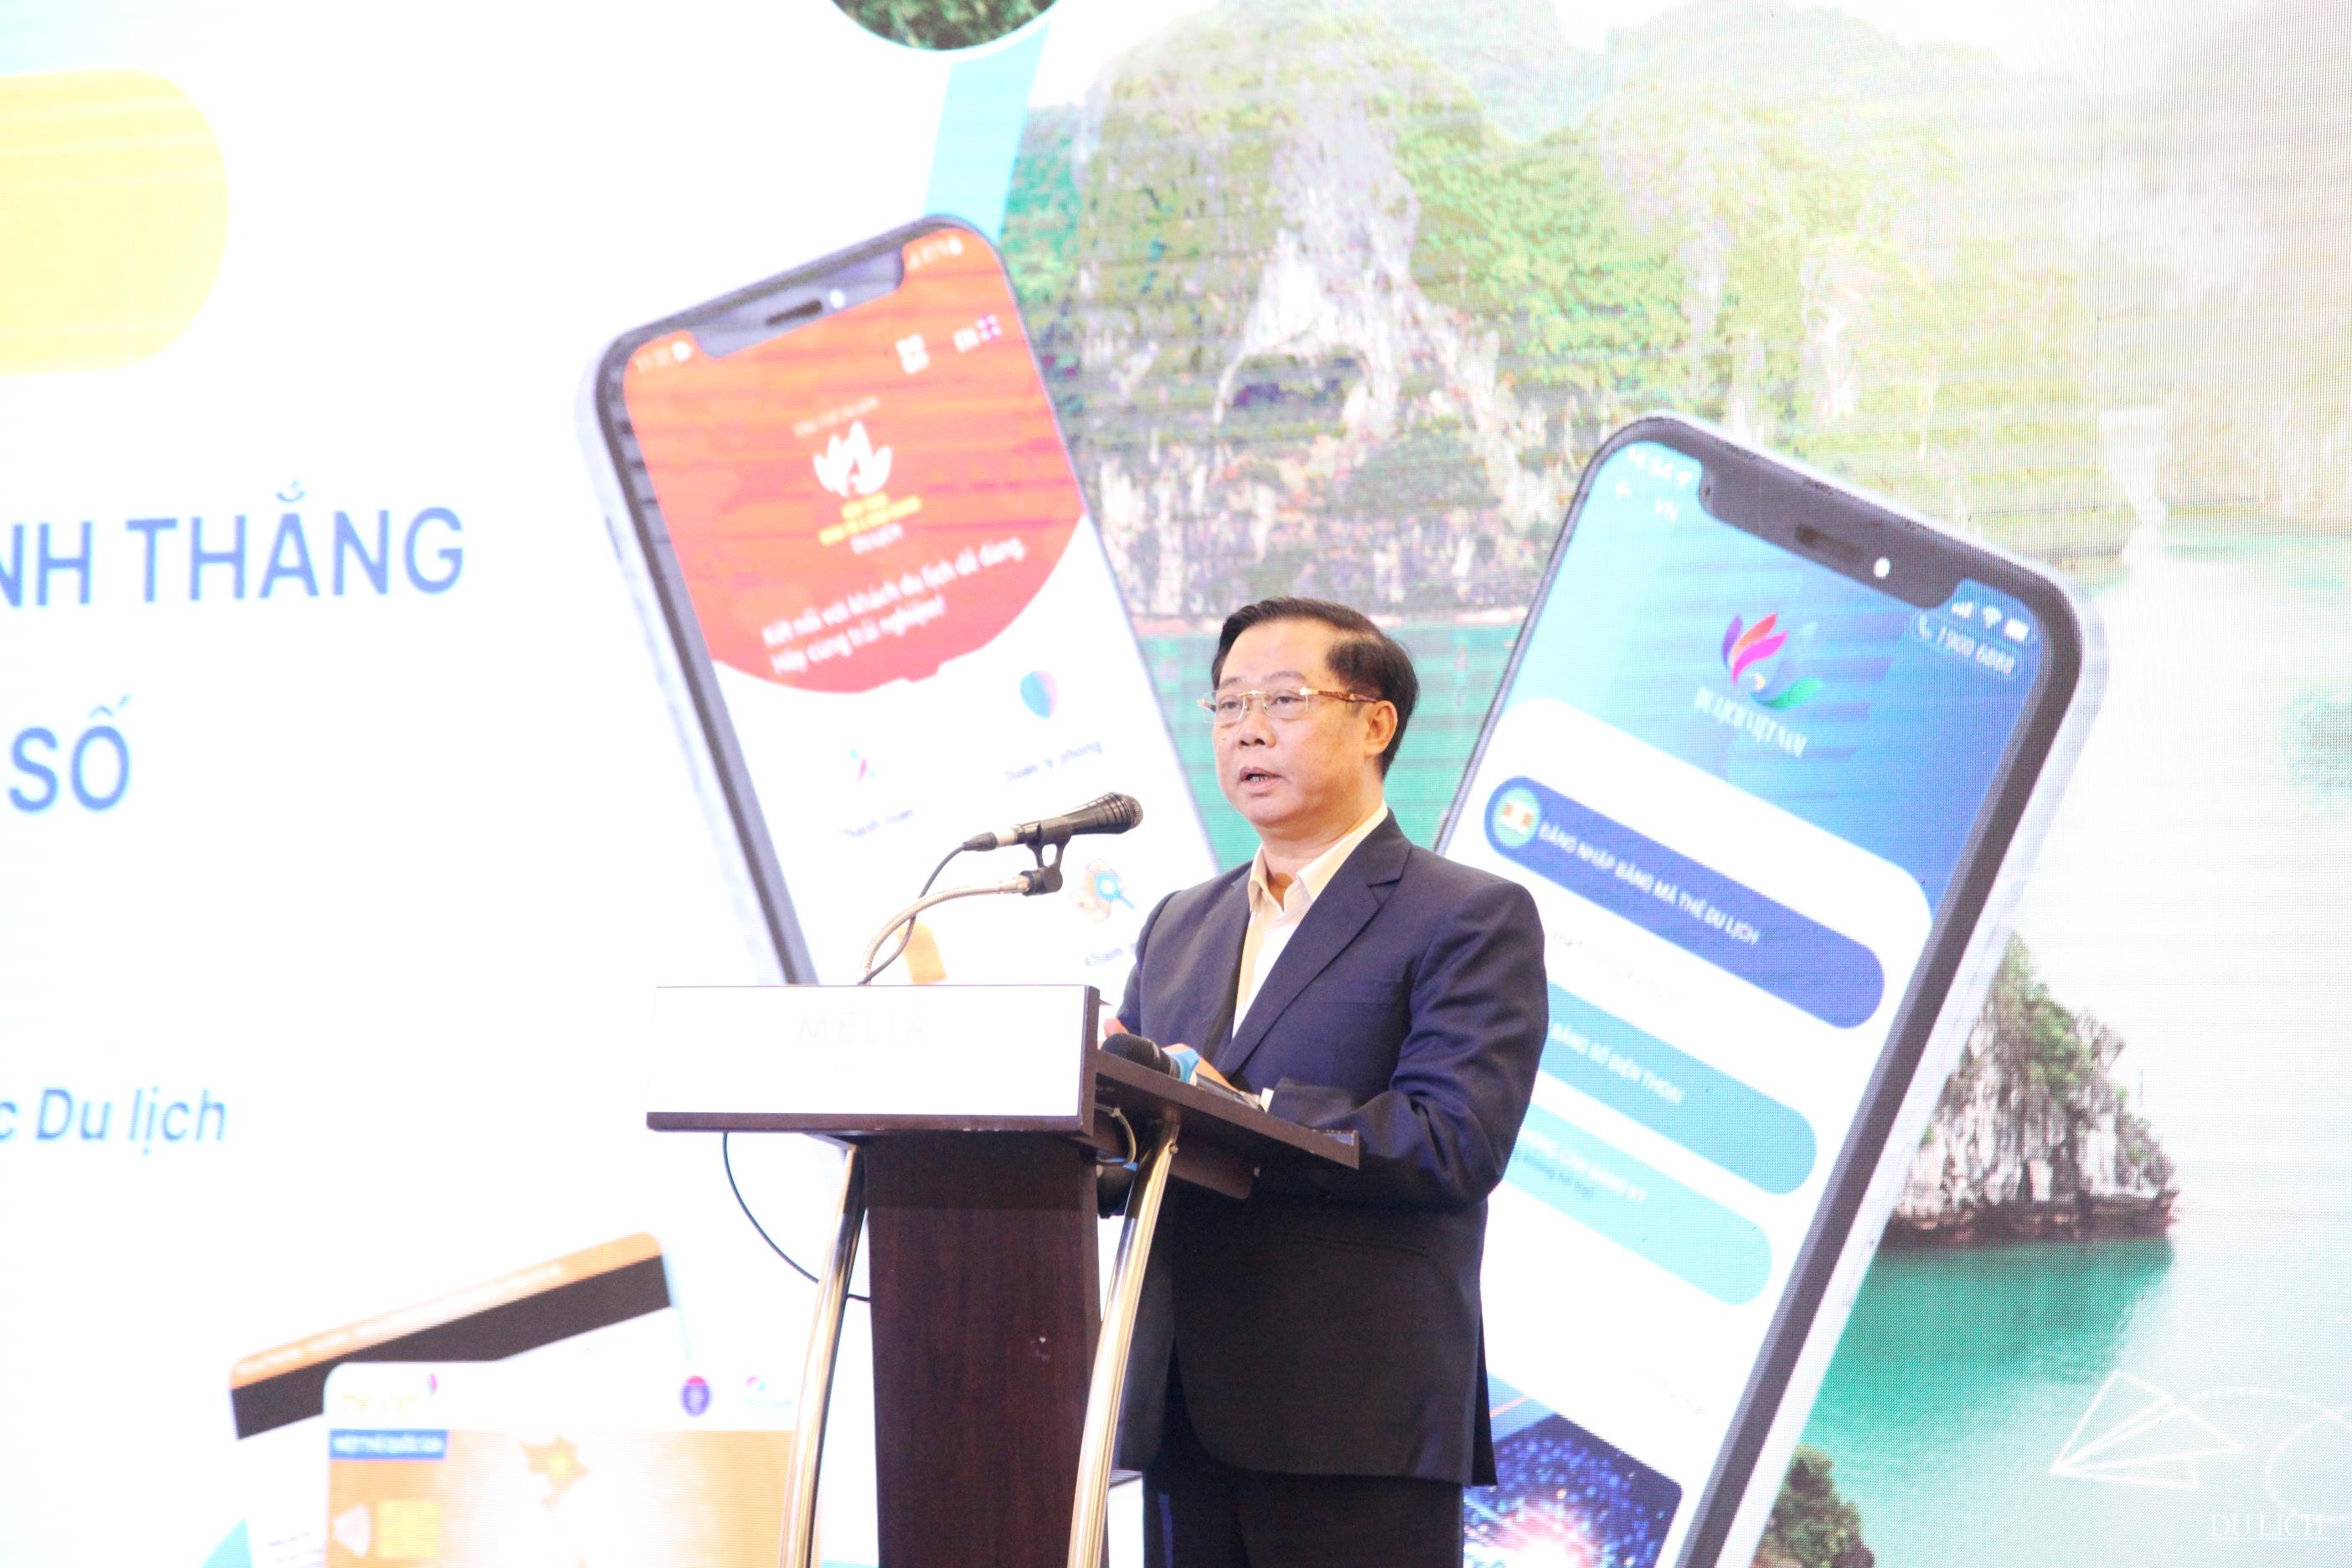  Phó Tổng cục trưởng Tổng cục Du lịch Phạm Văn Thủy chia sẻ tham luận chuyển đổi số trong du lịch